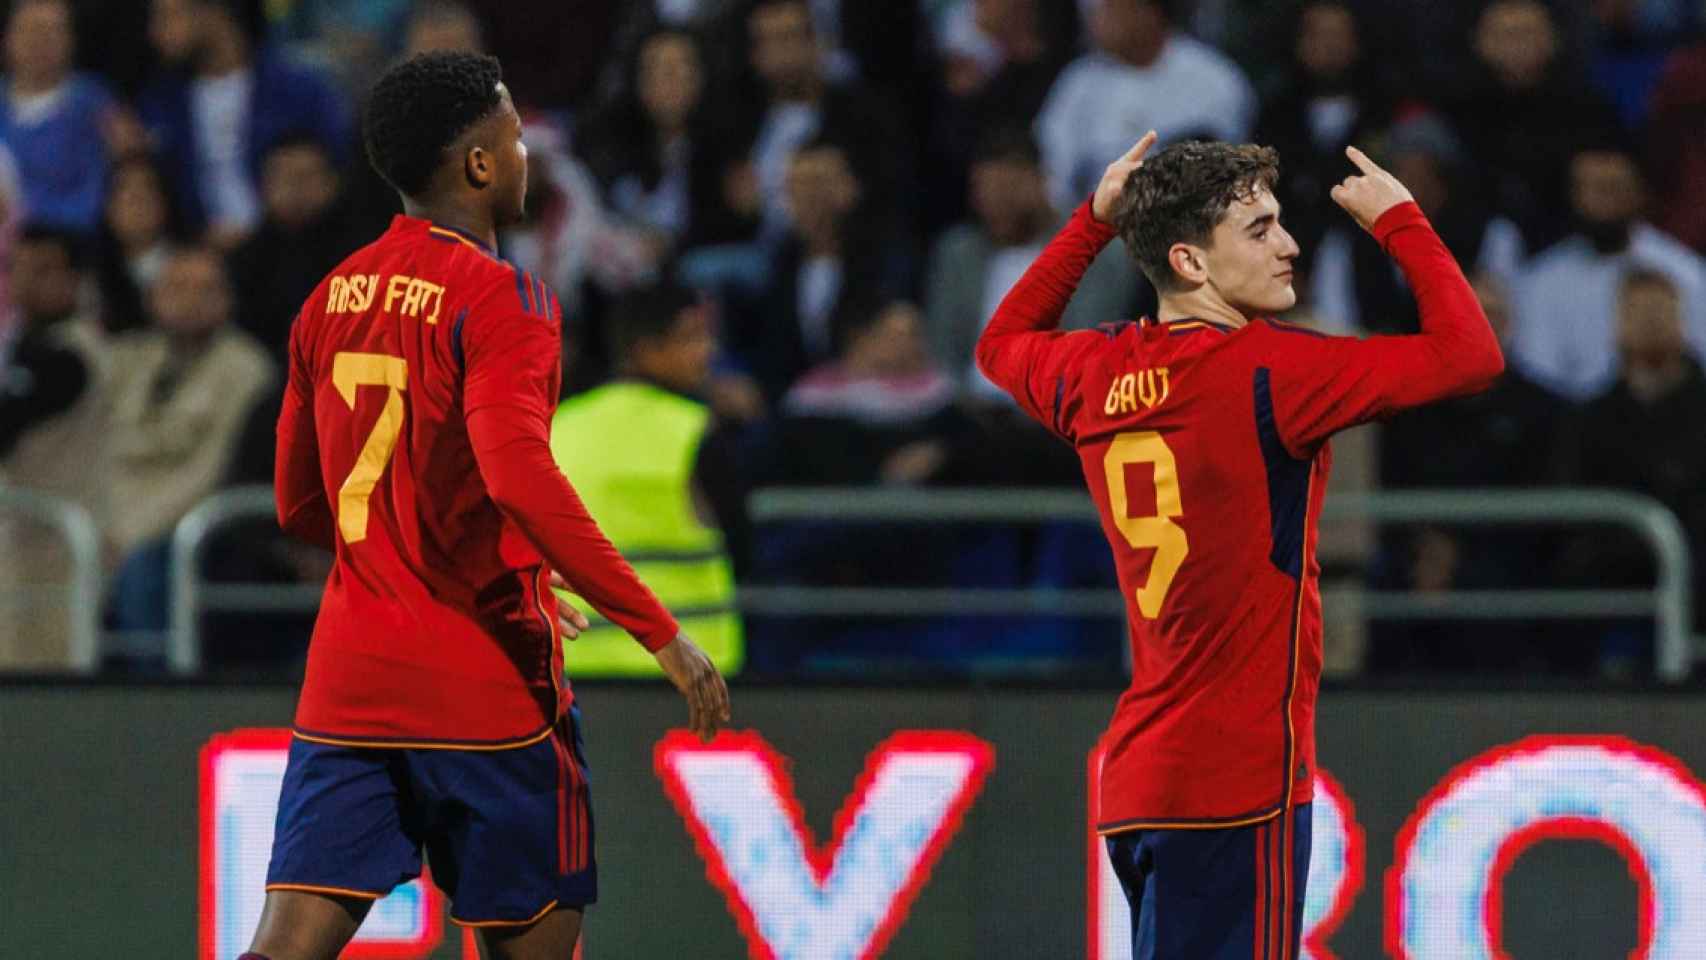 Gavi celebra su gol en el amistoso de España contra Jordania / SEFUTBOL